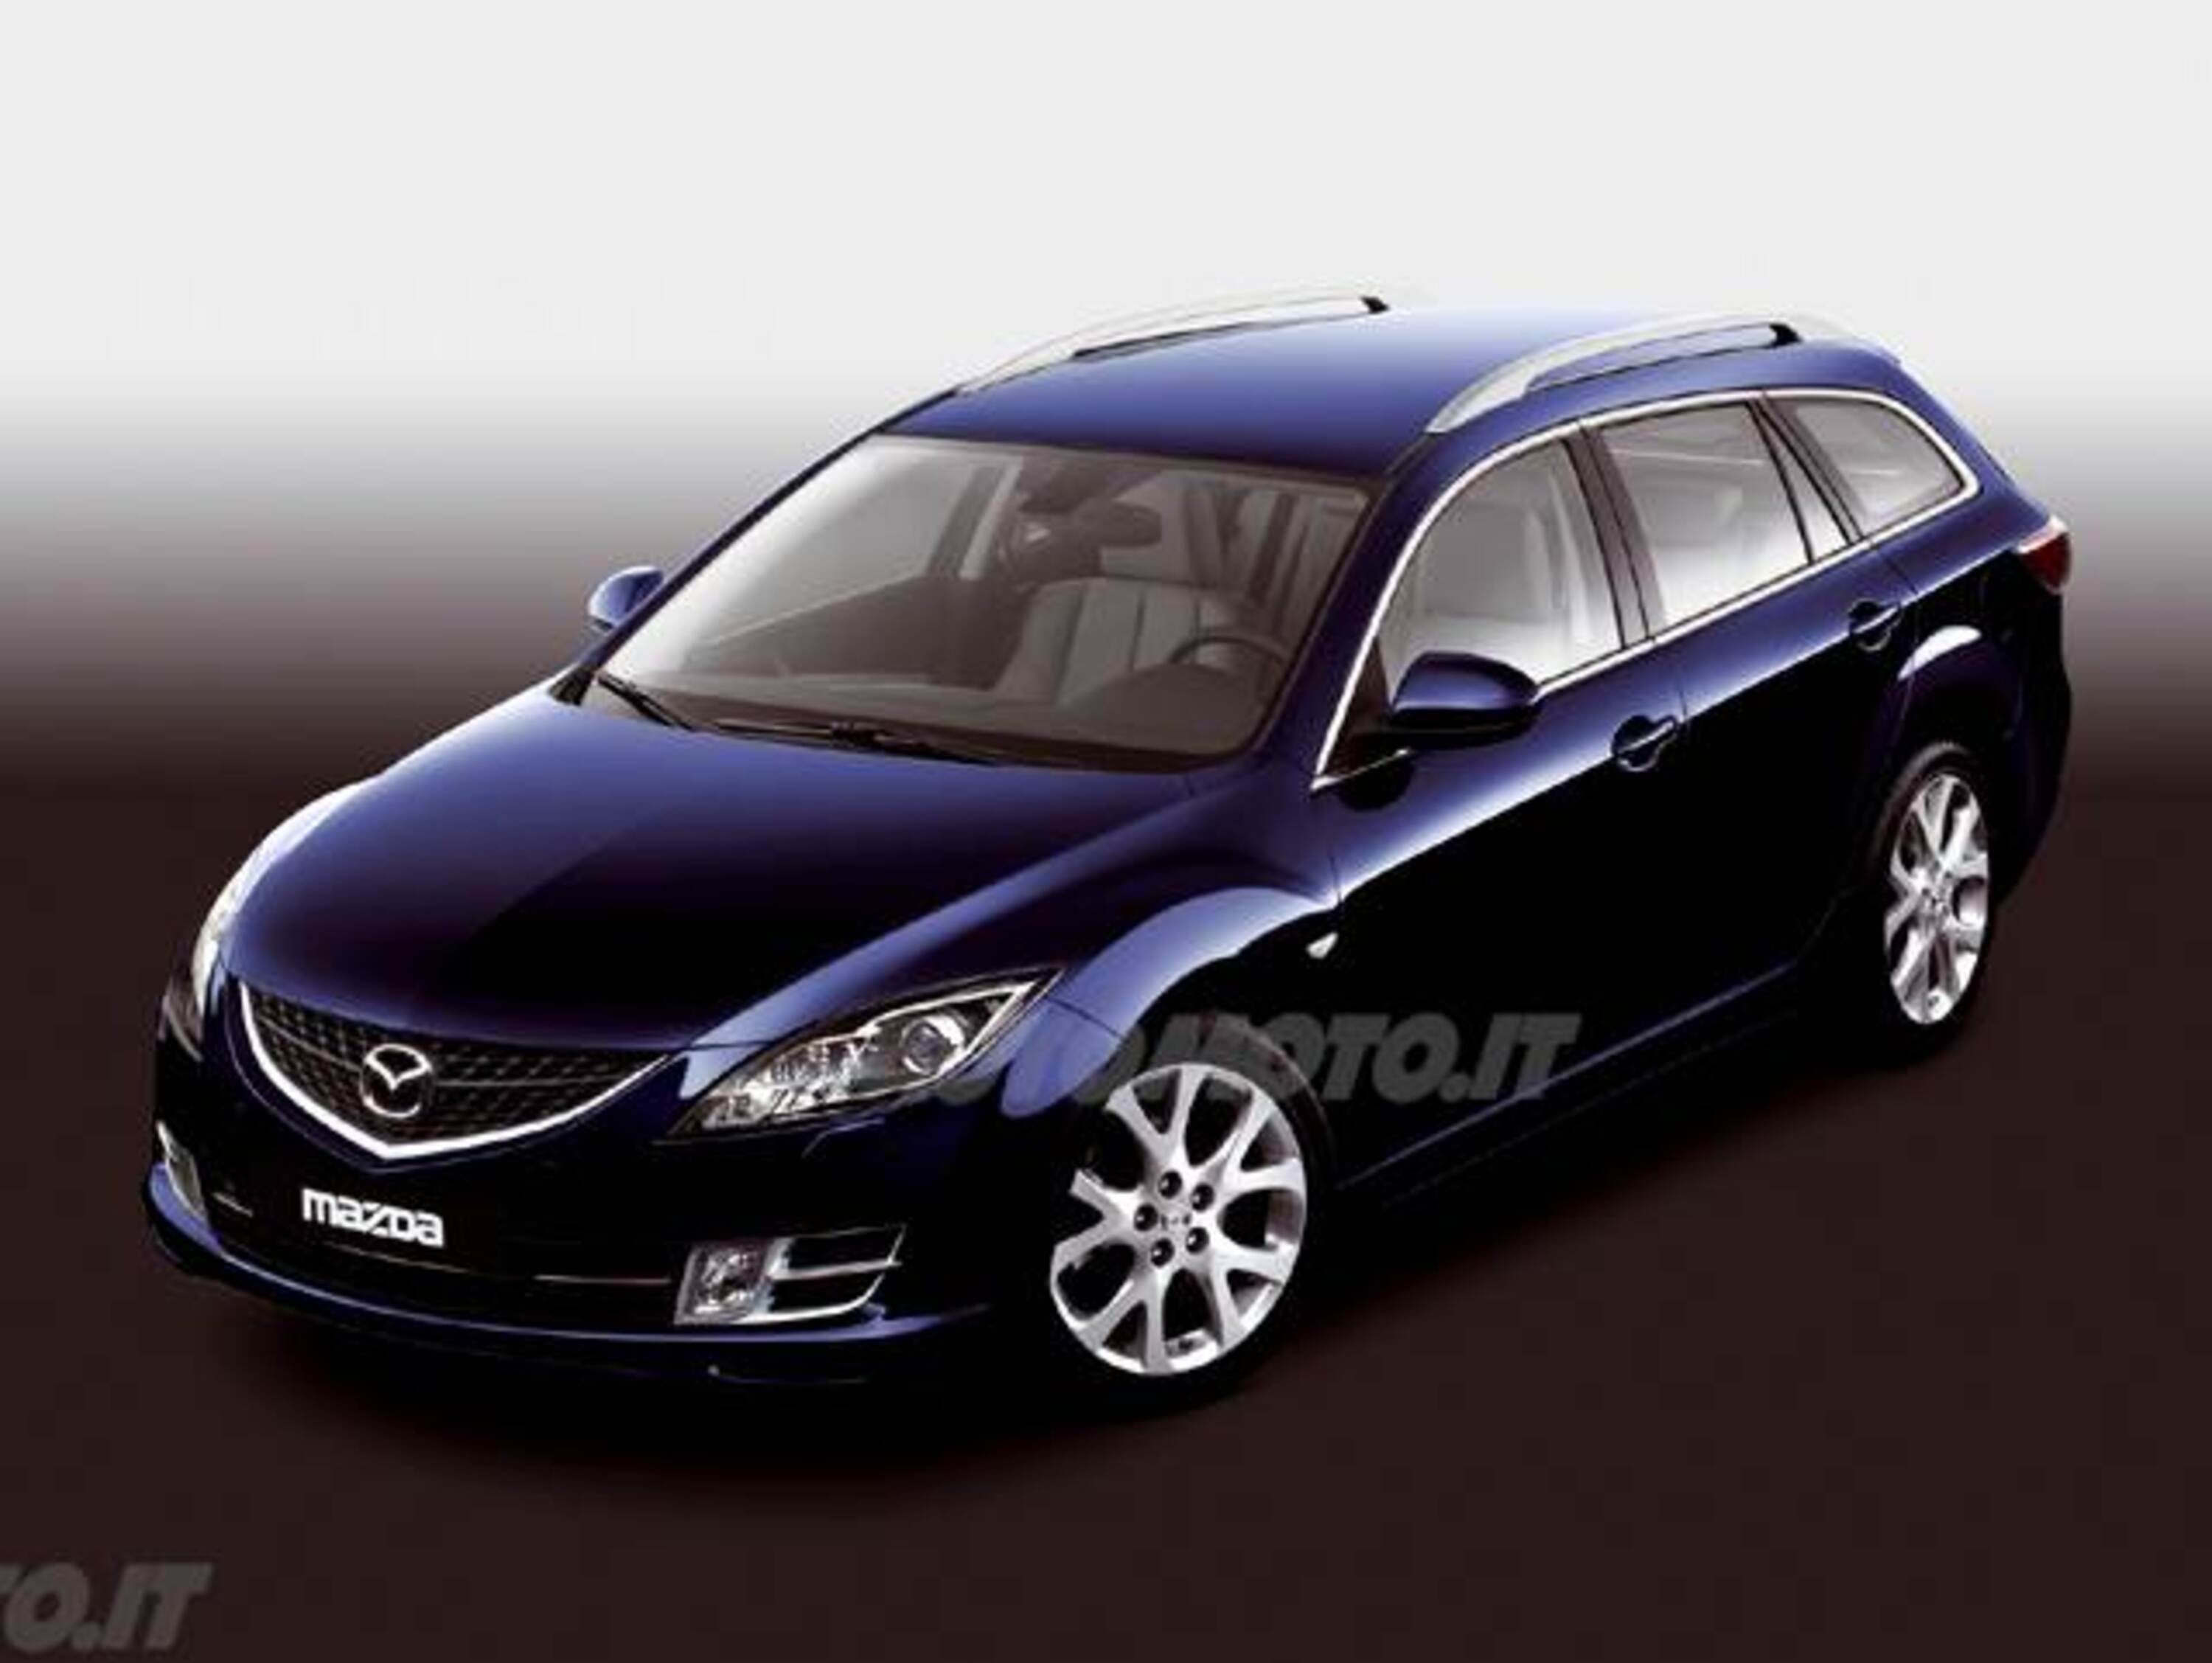 Mazda Mazda6 Station Wagon 2.2 CD 16V 185CV Wagon Luxury